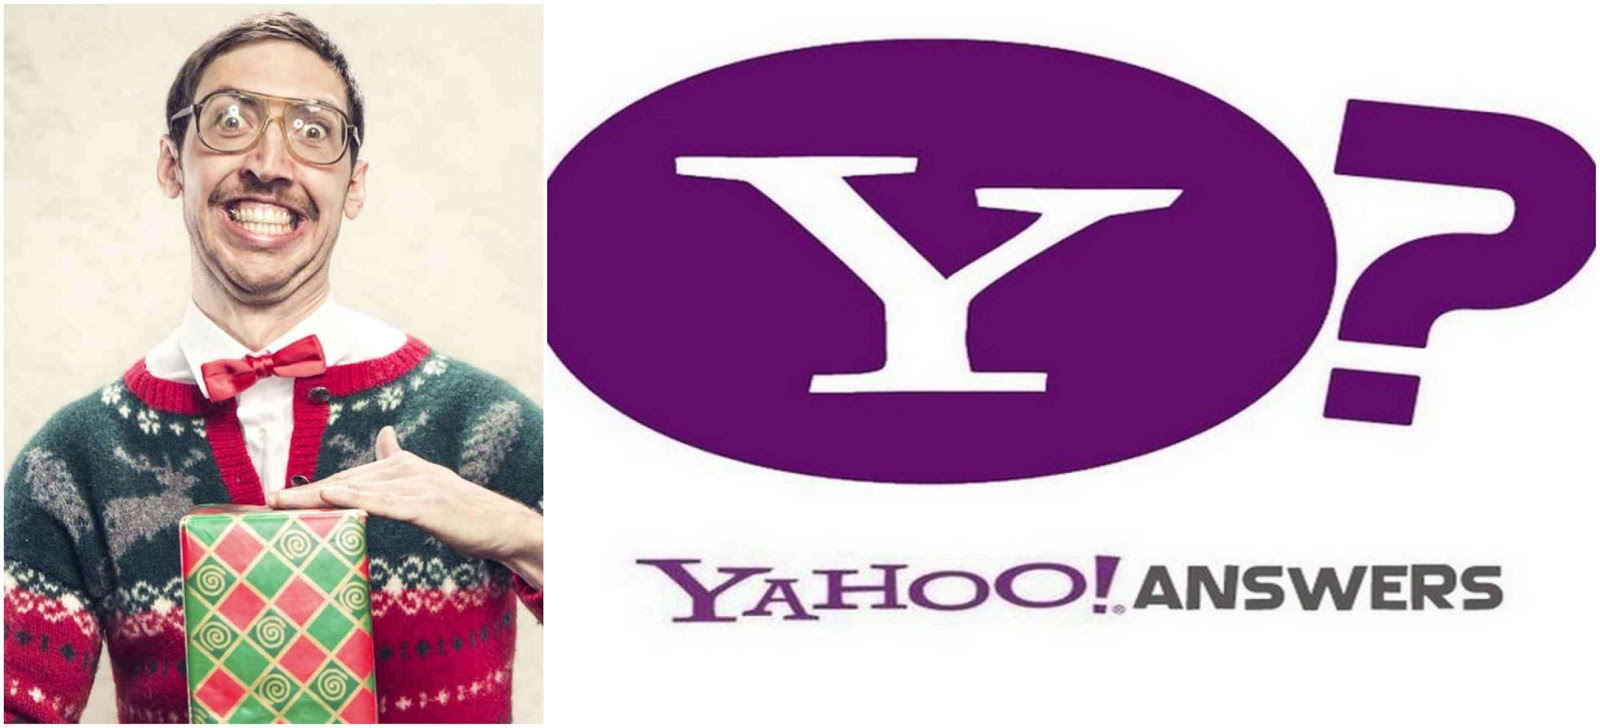 Idee Regalo Natale Yahoo.L Internetturbino Cosi Parlo Yahoo Answers Regali Di Natale Brutti